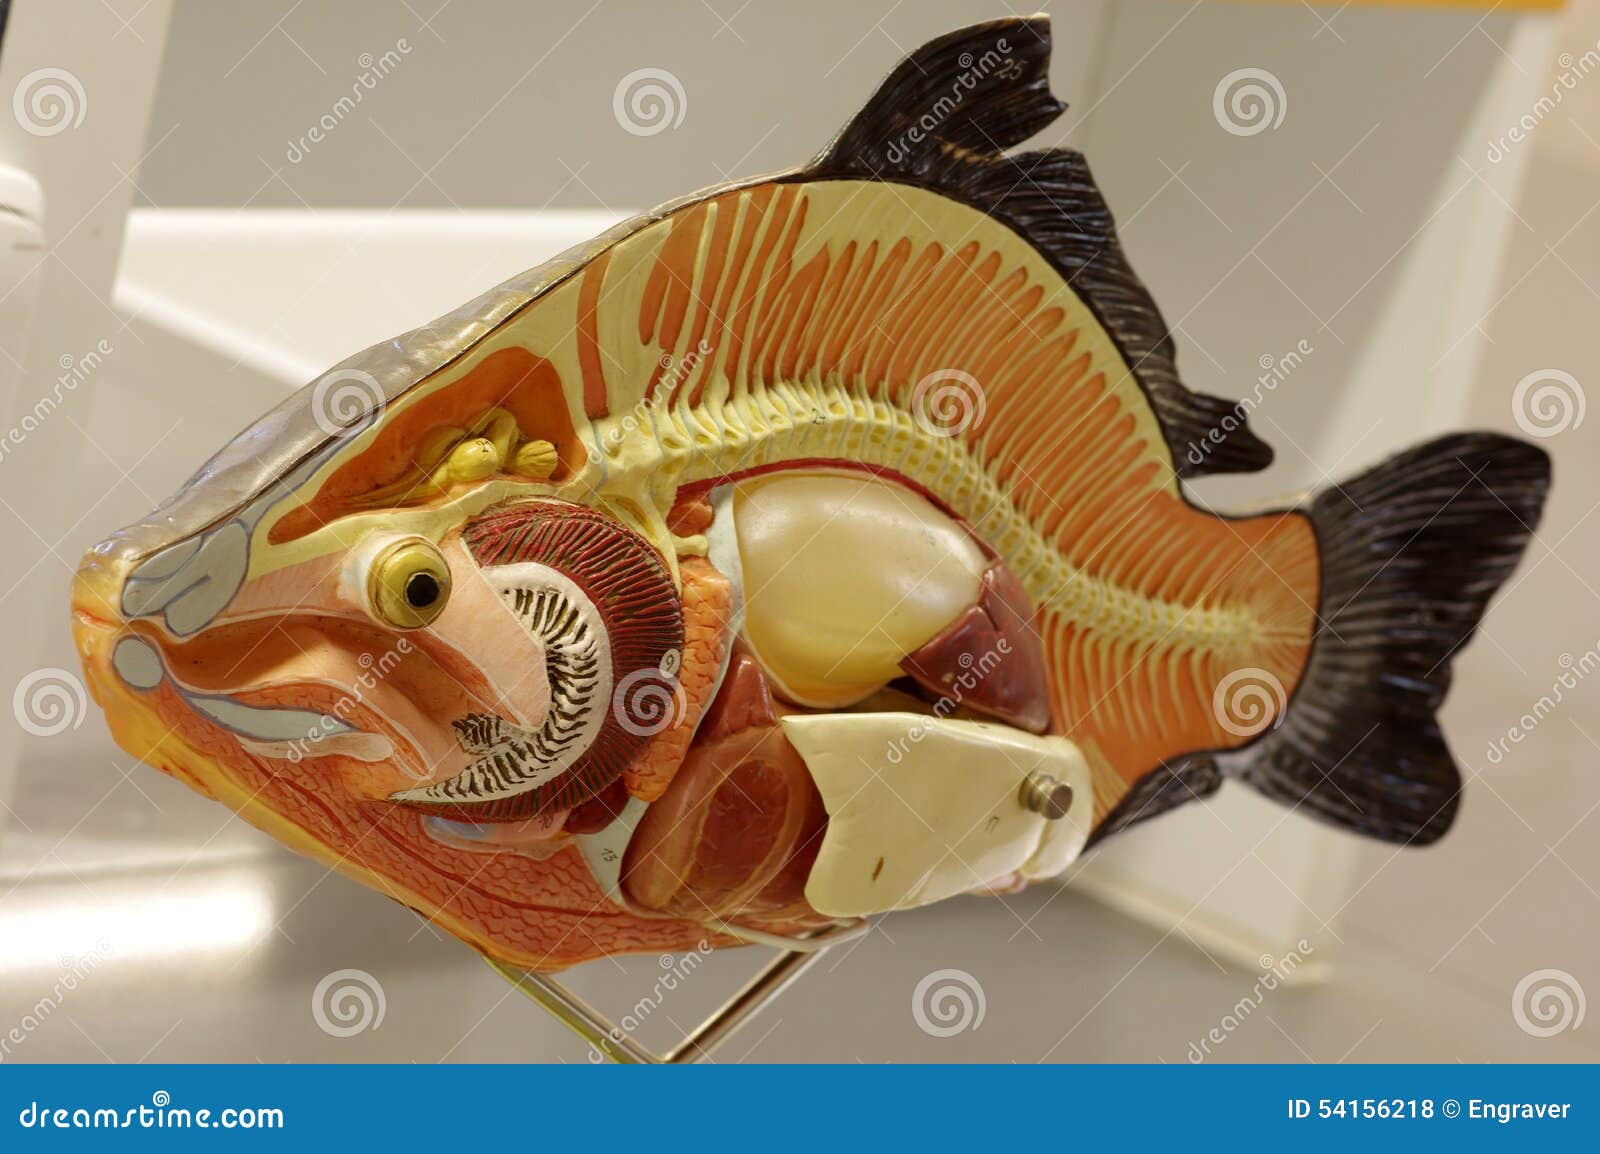 锦鲤鱼的身体结构-